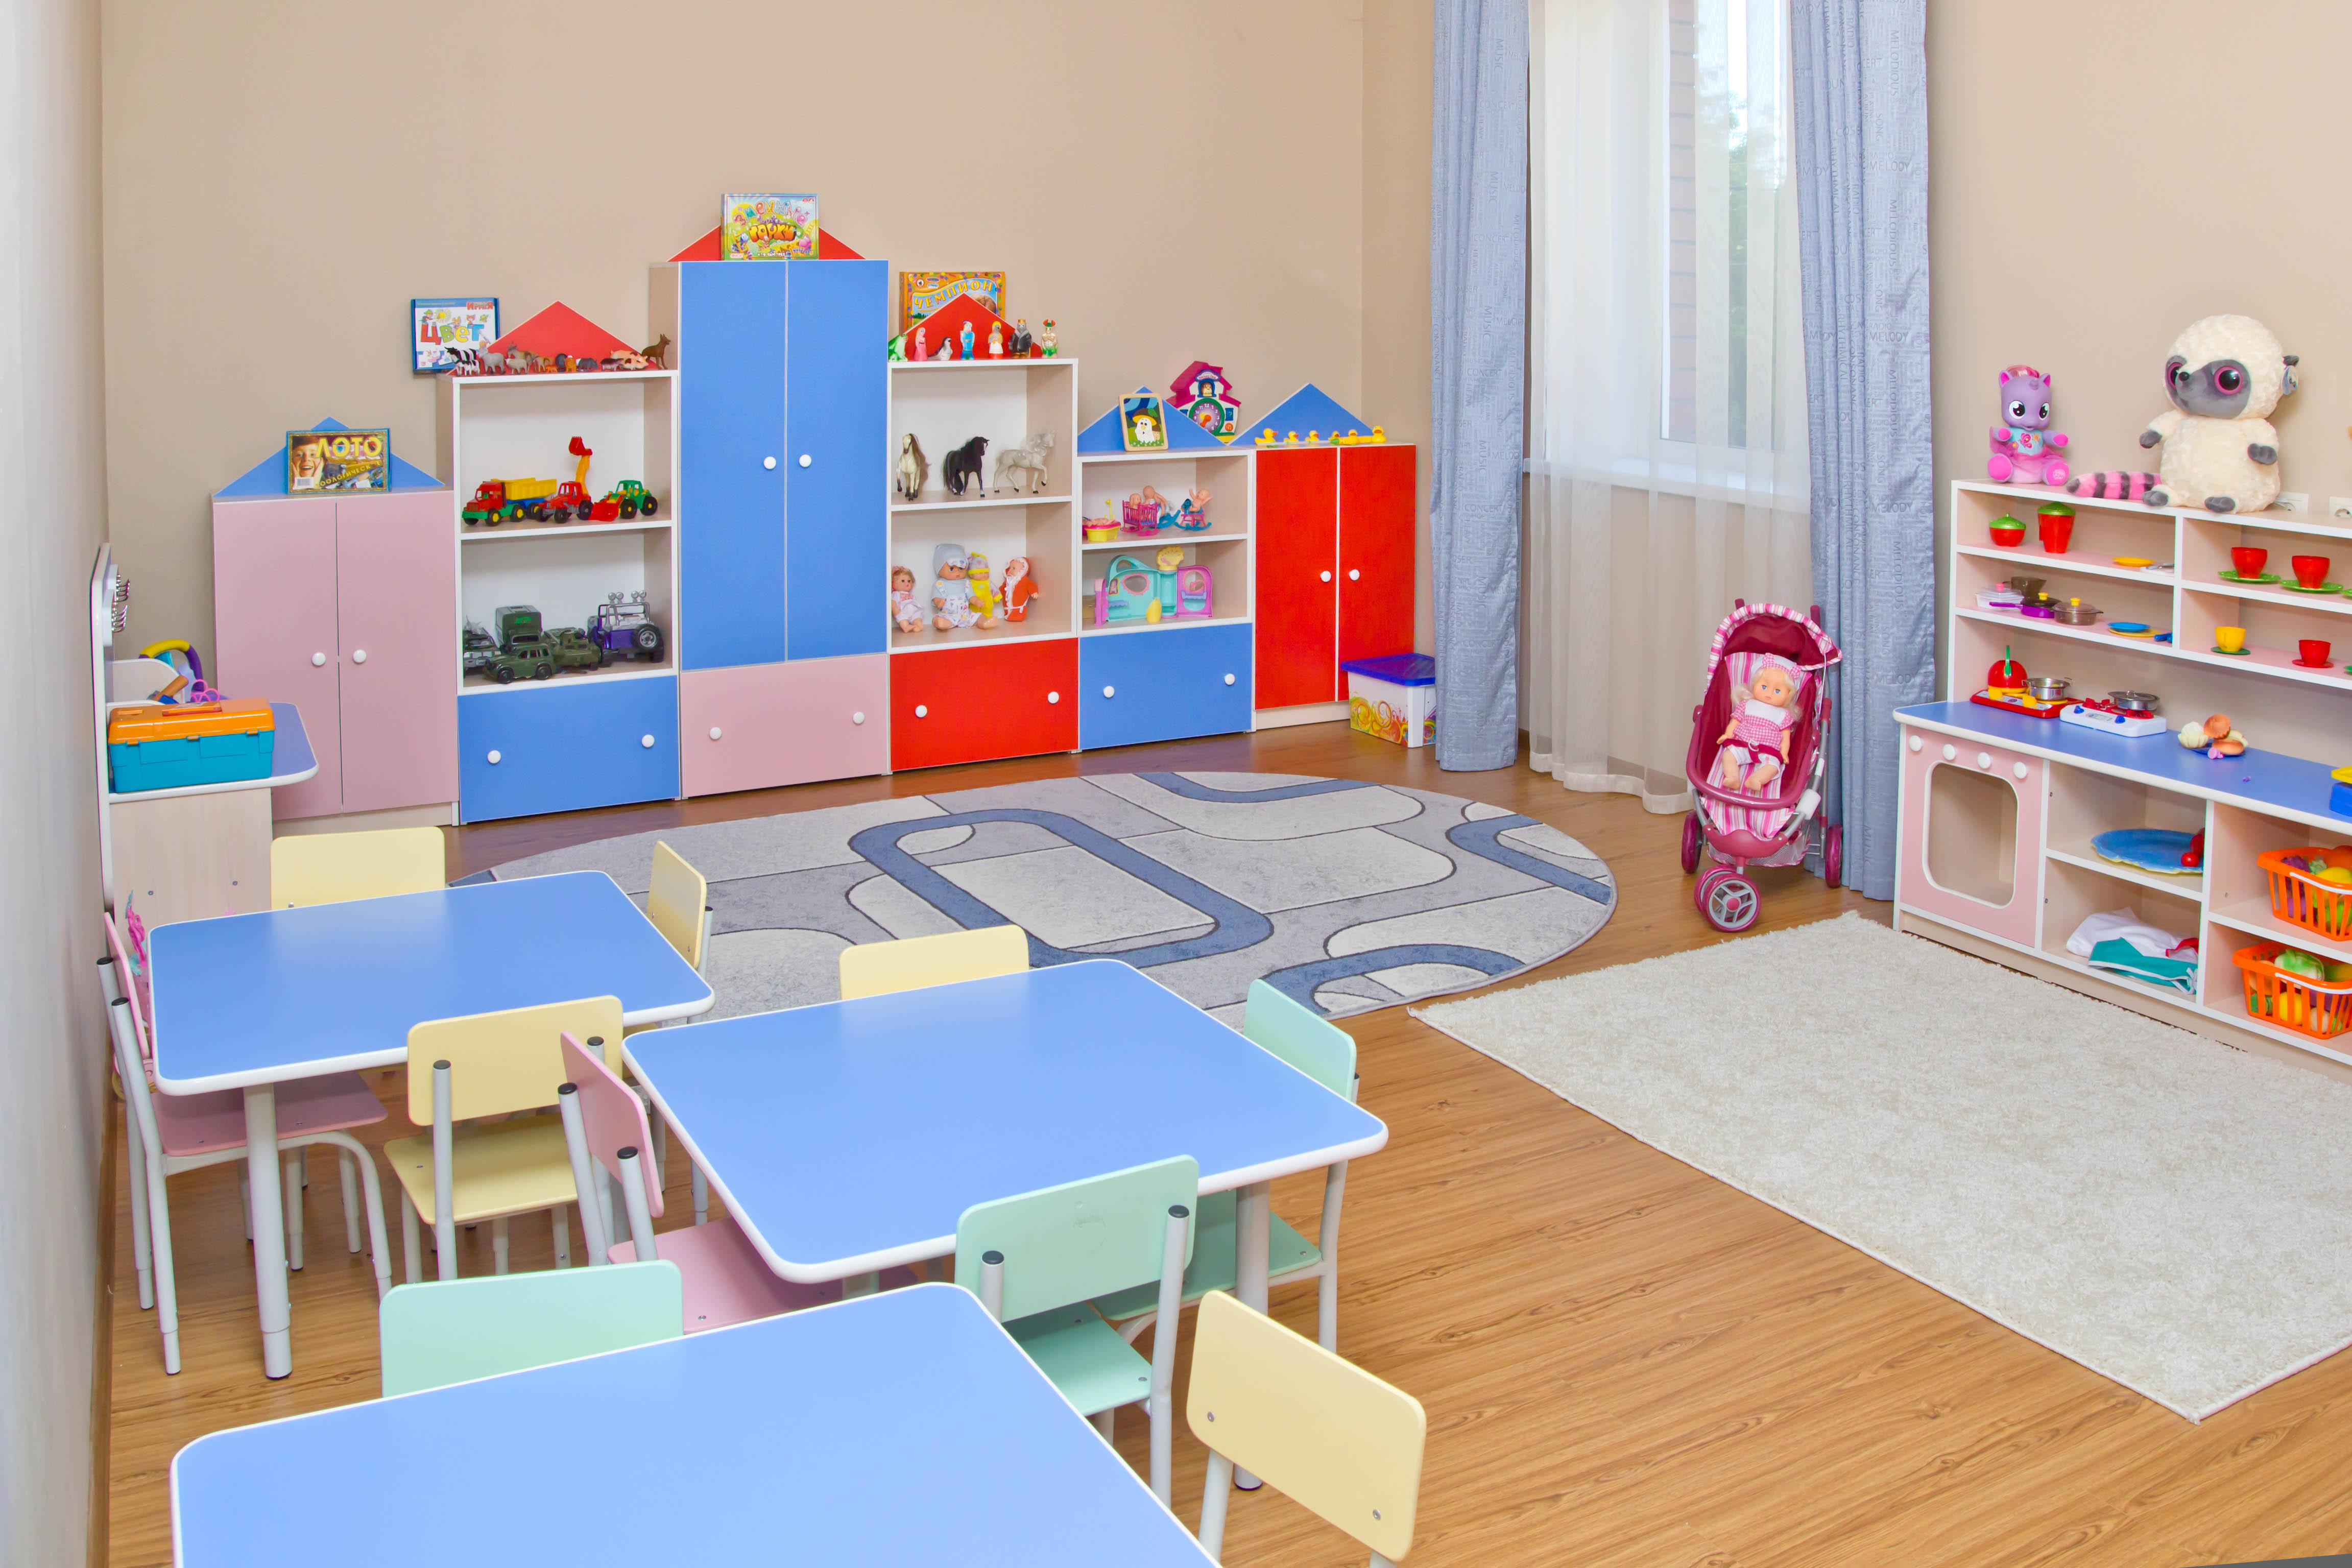 Мебель в ясли. Мебель для детского сада. Мебель для группы детского сада. Детская мебель для детского сада. Мебель для детей в детском саду.